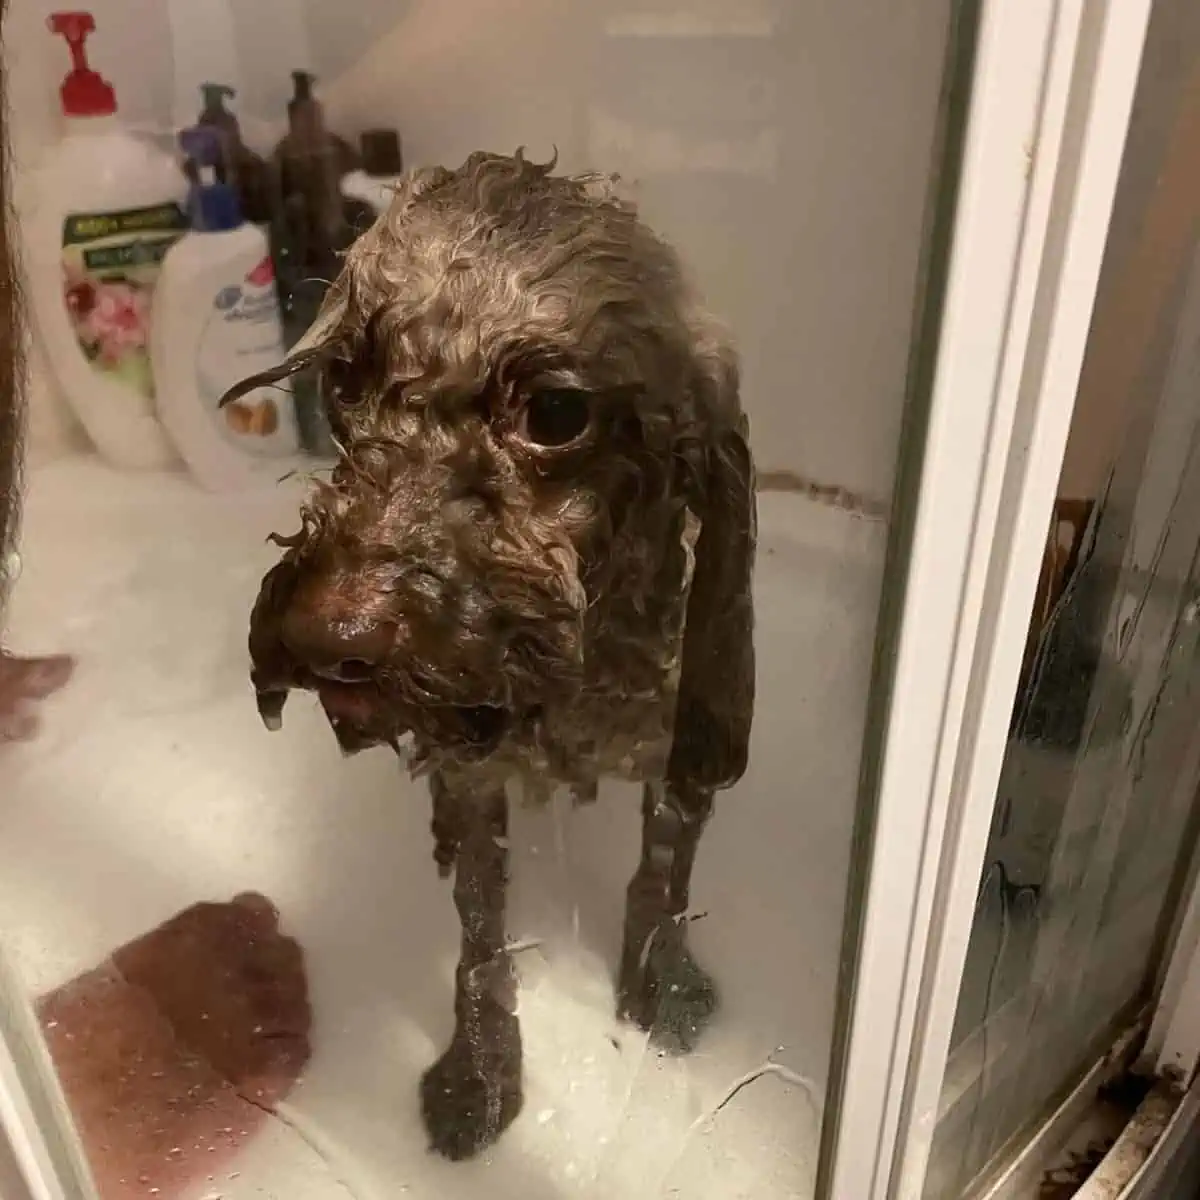 Poodle inside the shower